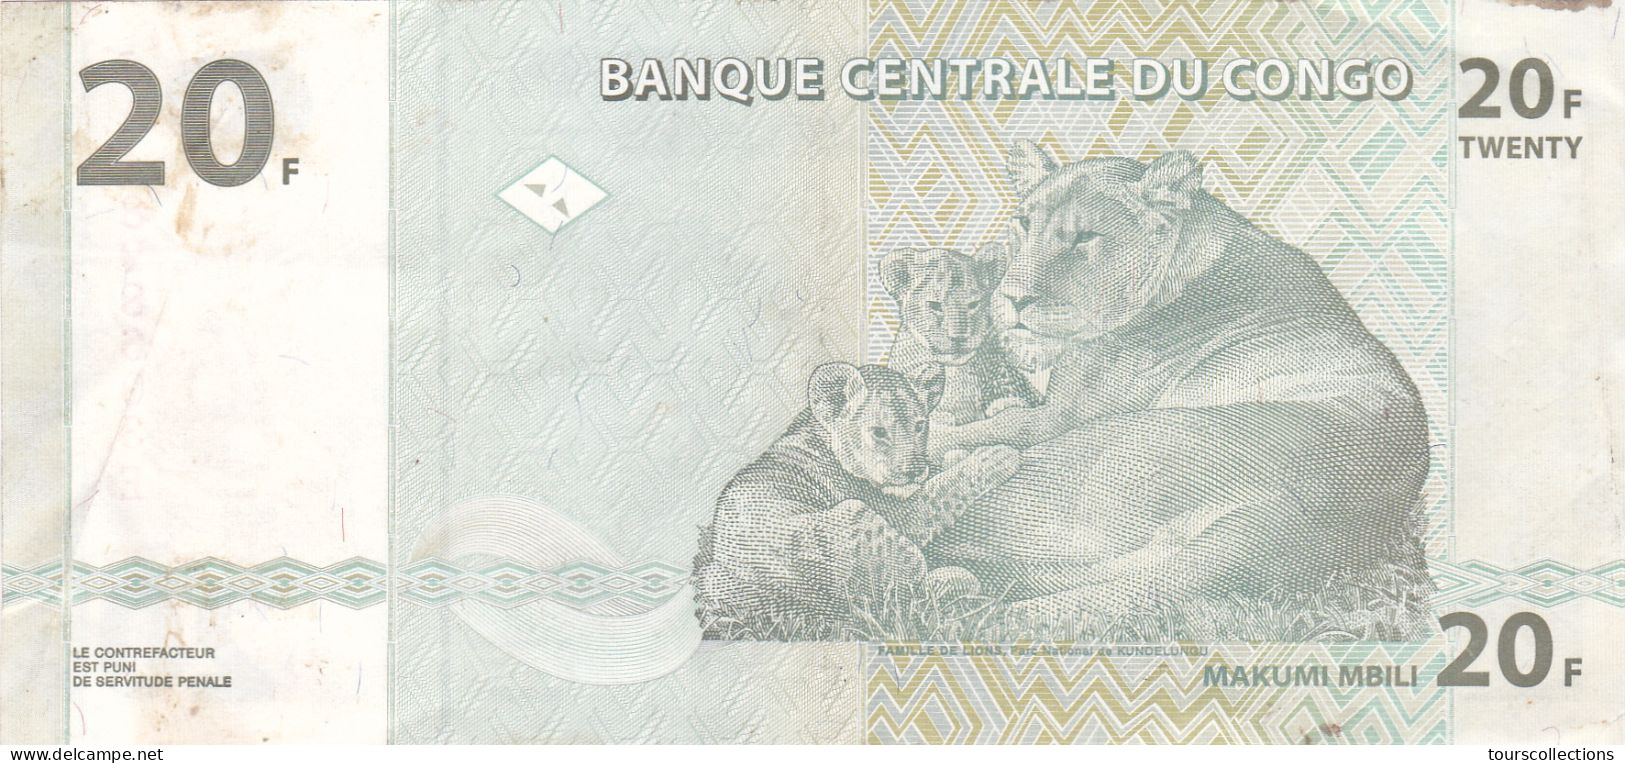 CONGO - BILLET 20 FRANCS Du 30 Juin 2003 - N° Série JA 1898603 E - Lion Lionne Et Ses Petits Lionceaux - République Du Congo (Congo-Brazzaville)